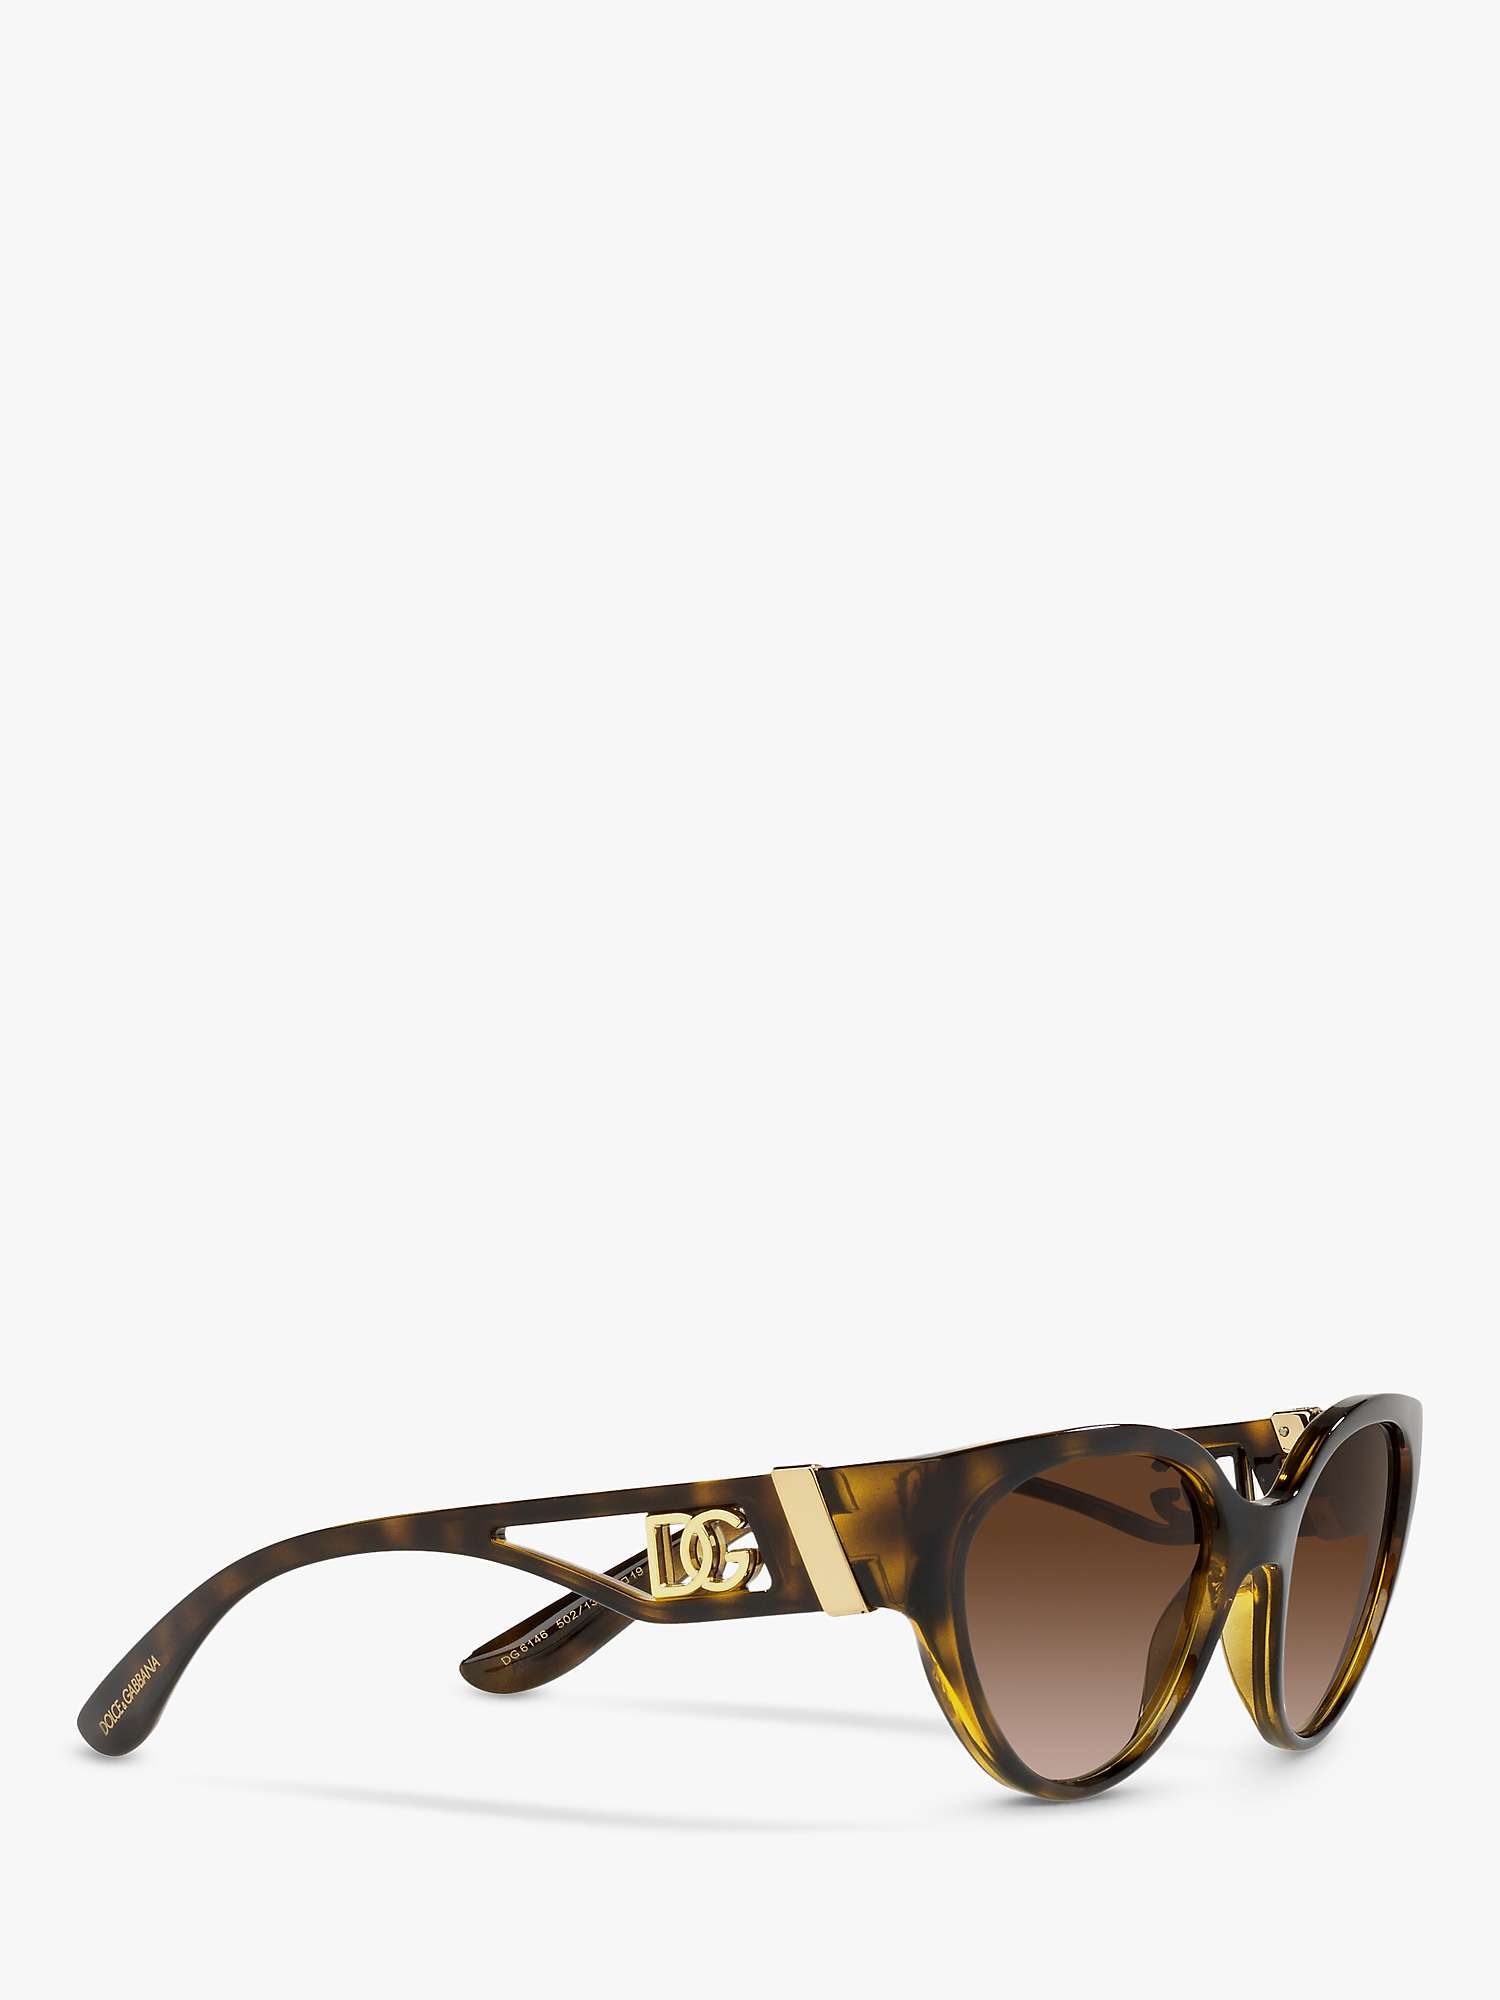 Buy Dolce & Gabbana DG6146 Women's Cat's Eye Sunglasses Online at johnlewis.com